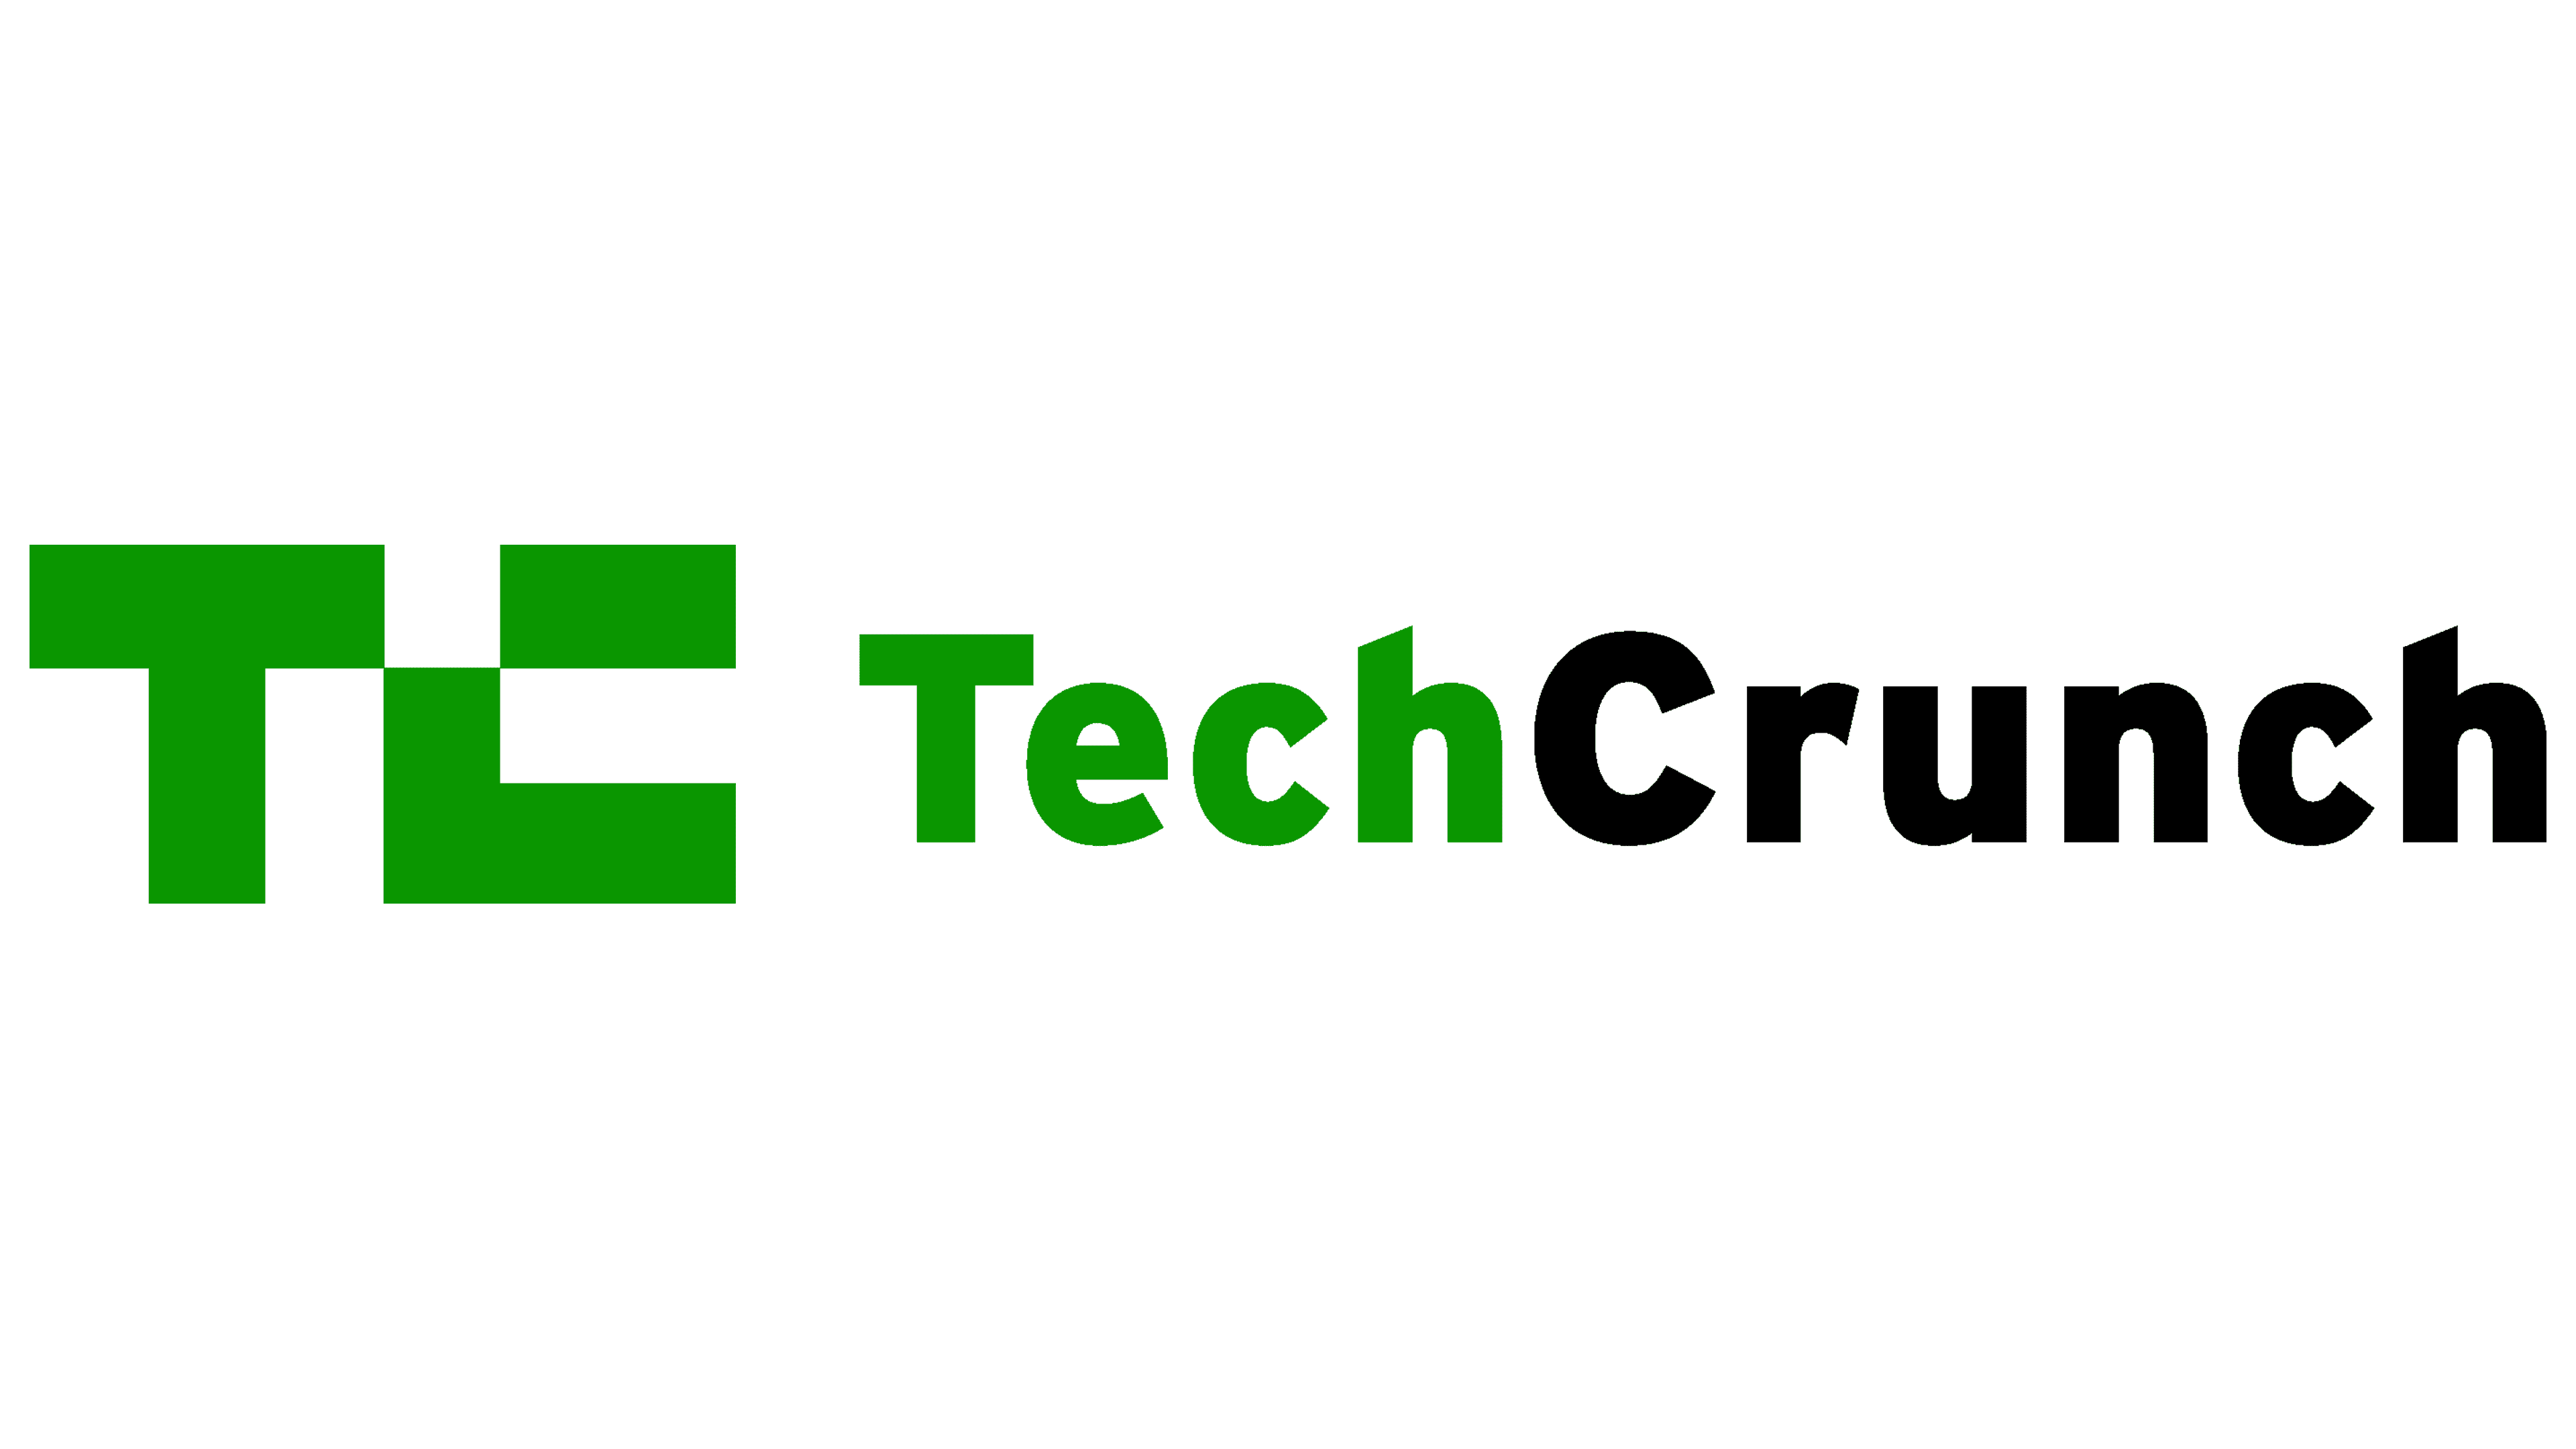 TechCrunch Logo side by side